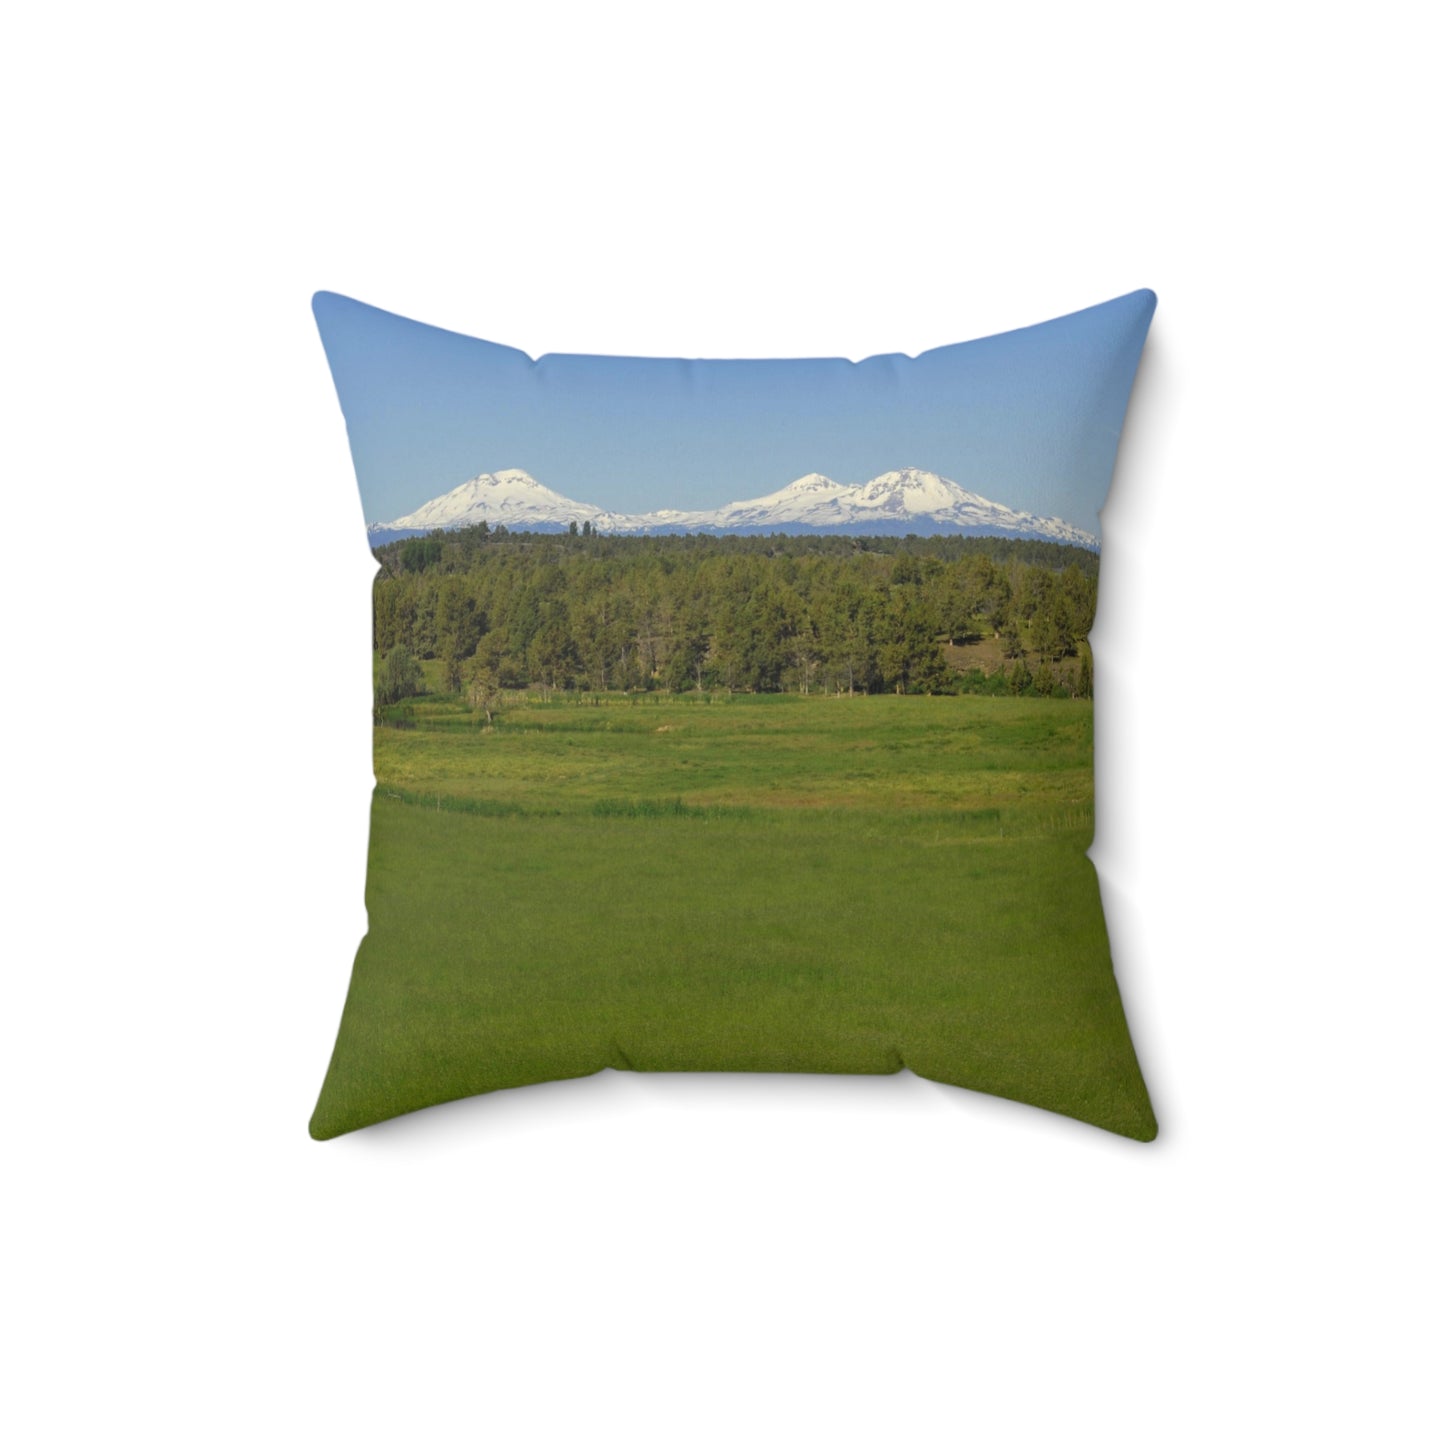 Mountain Meadow Spun Polyester Square Pillow